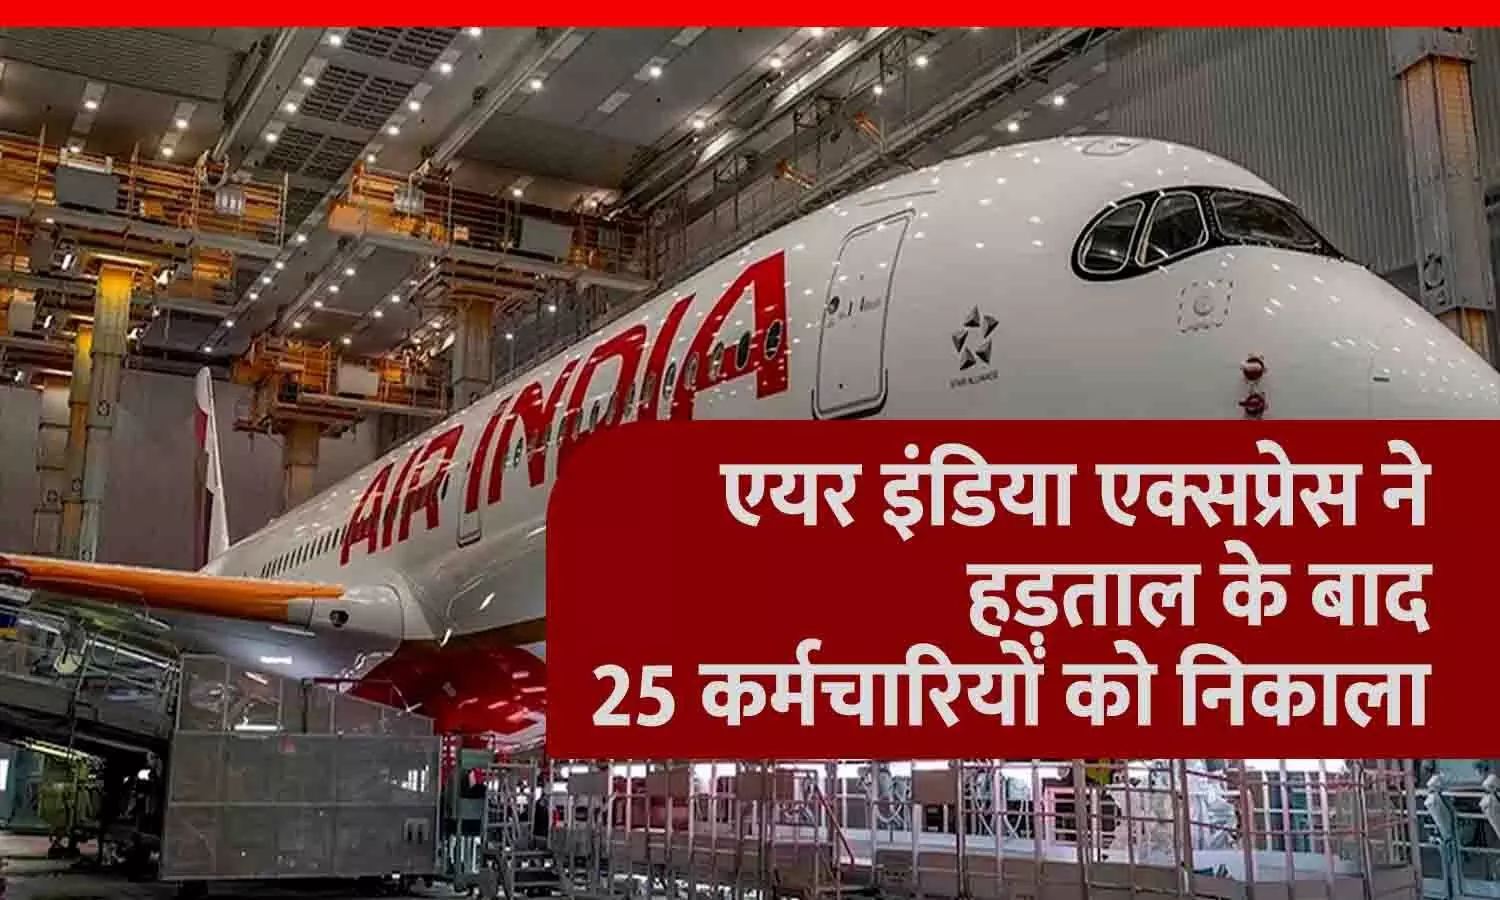 एयर इंडिया एक्सप्रेस ने हड़ताल के बाद 25 कर्मचारियों को निकाला, बचे हुए को चेतावनी, आज शाम तक नहीं लौटे तो...